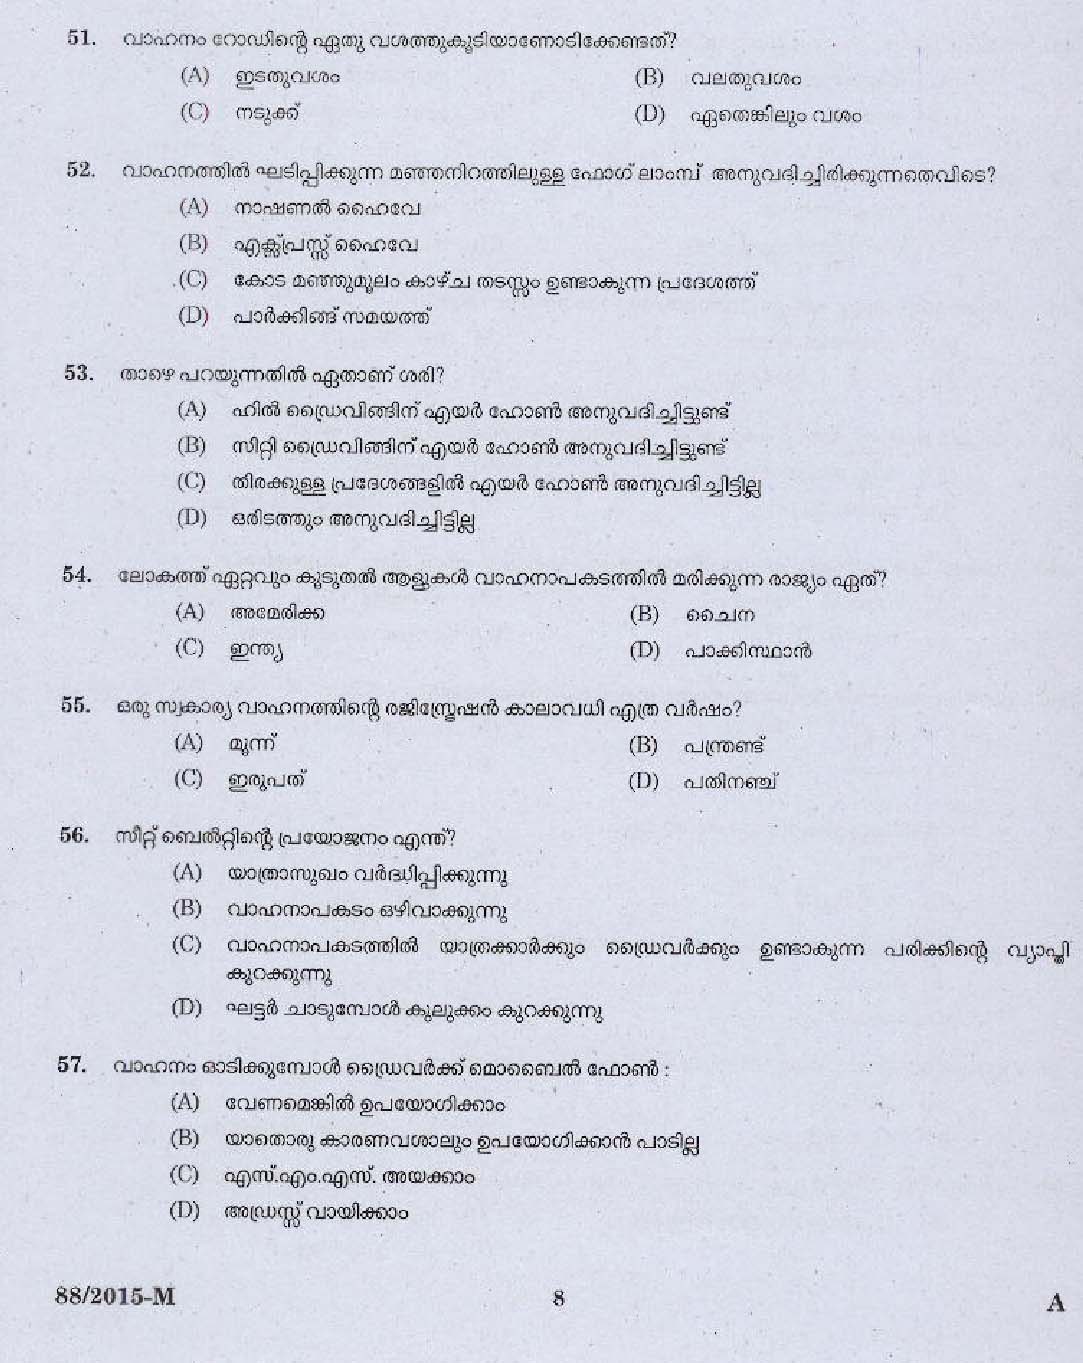 Kerala PSC Driver Grade II Exam 2015 Question Paper Code 882015 M 6